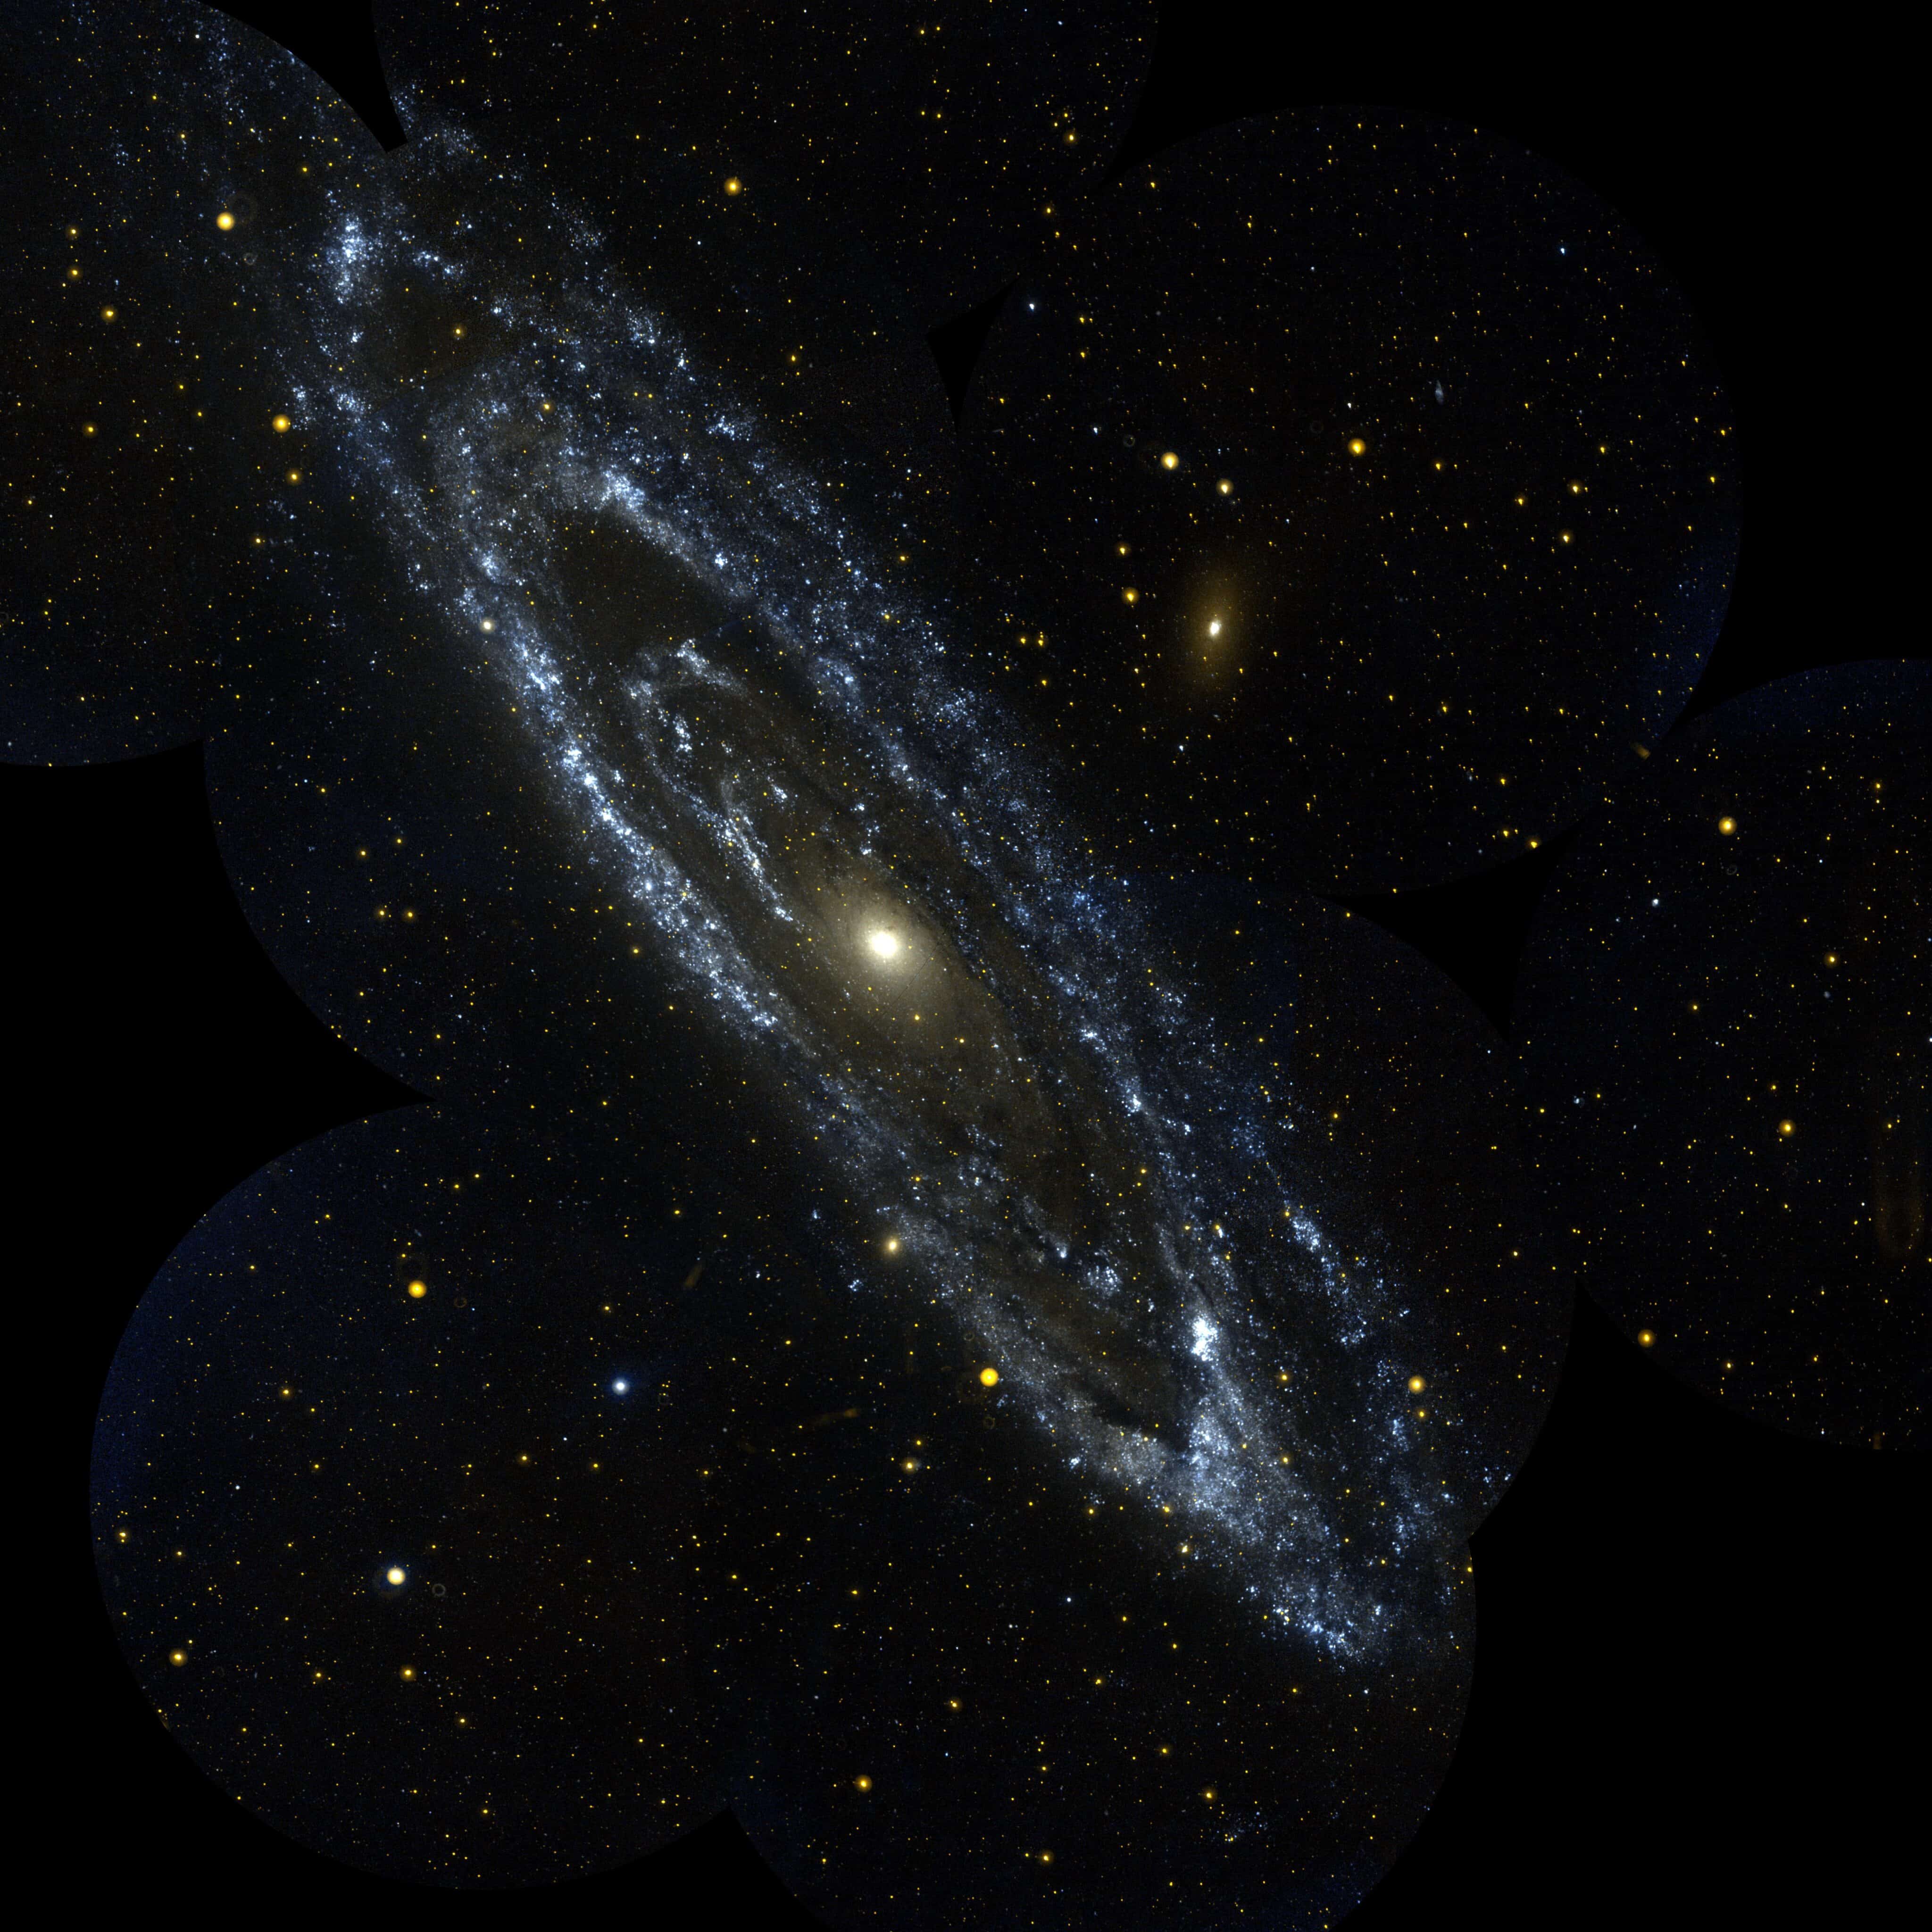 m31 andromeda galaxy courtesy of NASA